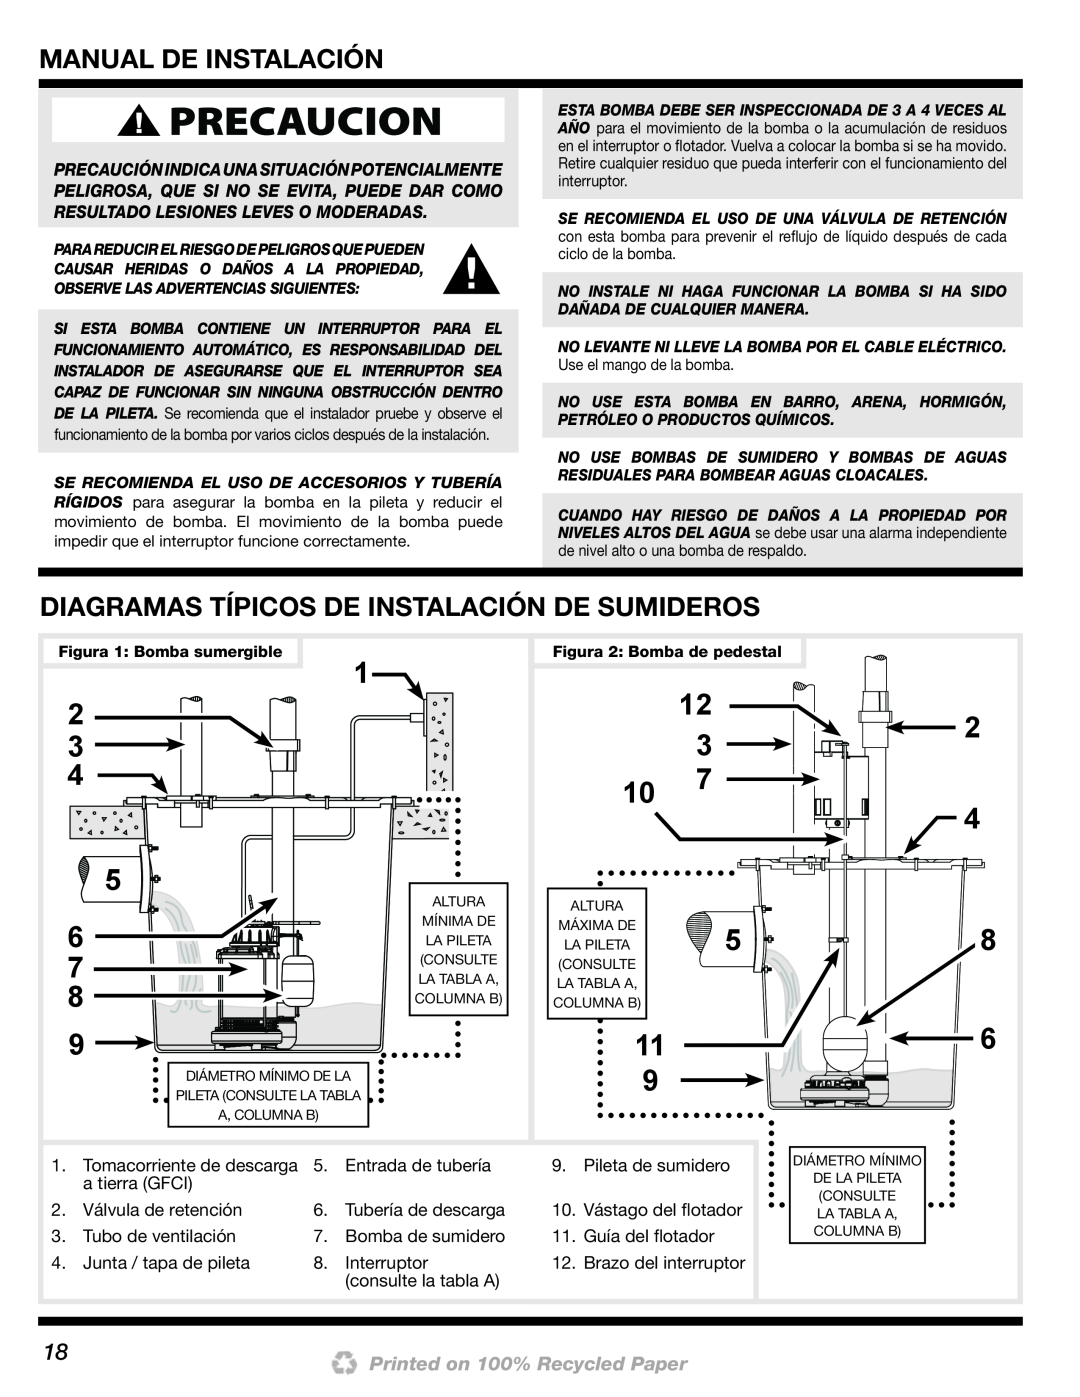 Wayne 200000-015 installation manual Manual De Instalación, Diagramas Típicos De Instalación De Sumideros, 2 3 4 5 